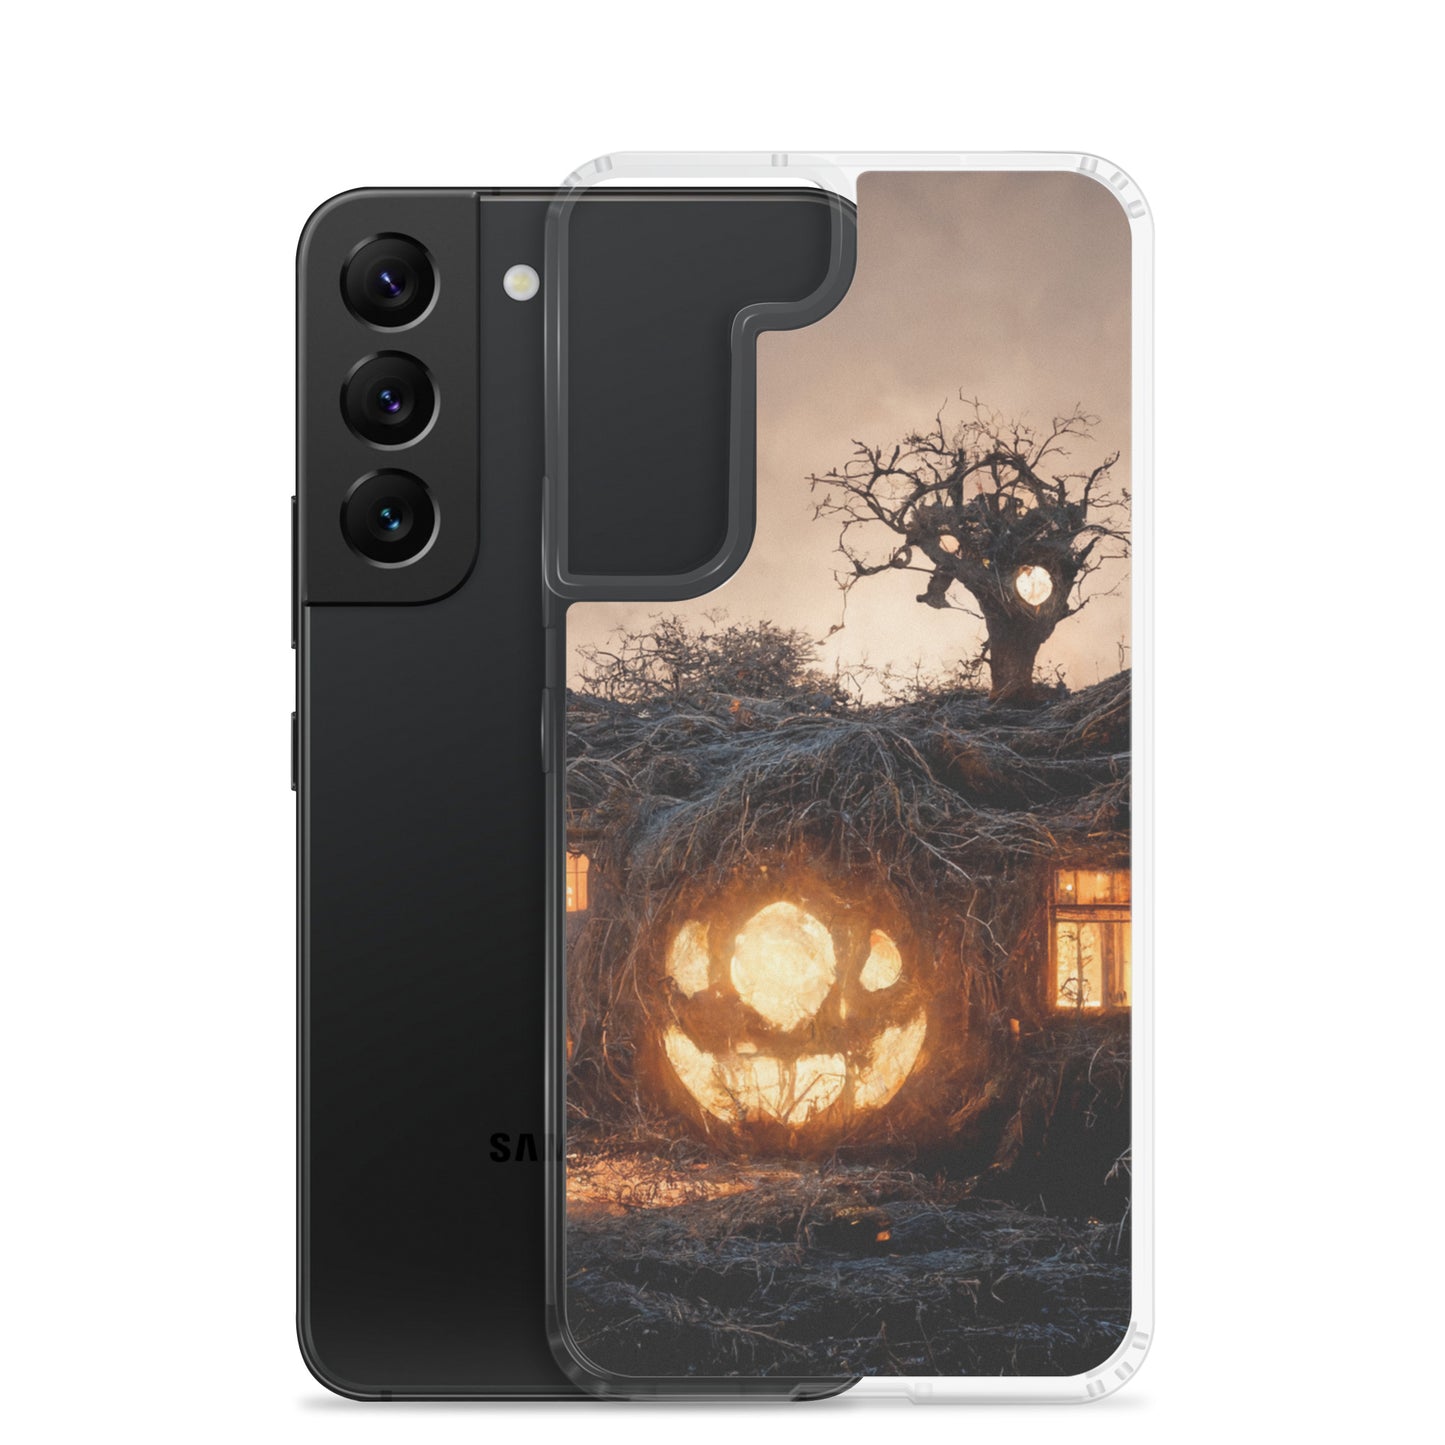 Neduz Designs Halloween Pumpkin House Samsung Clear Case